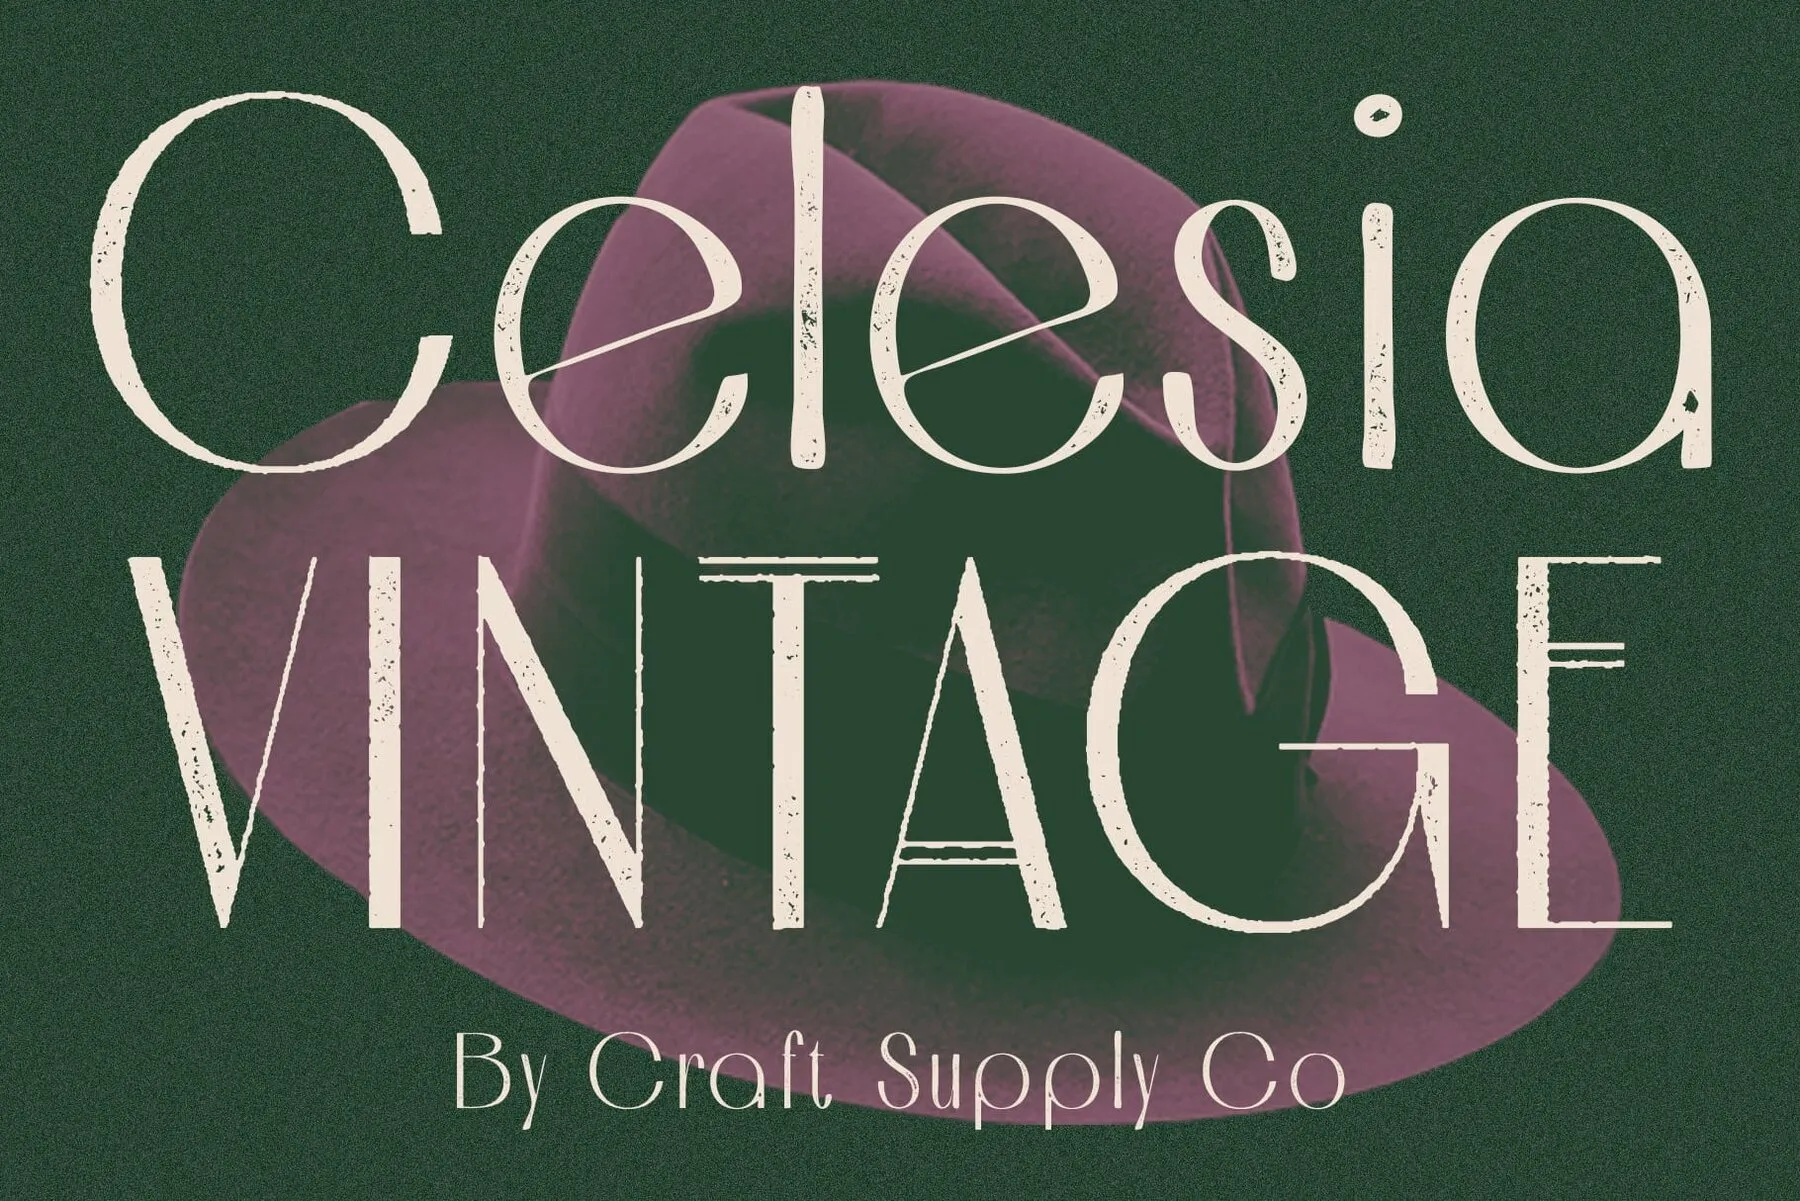 Celesia Vintage